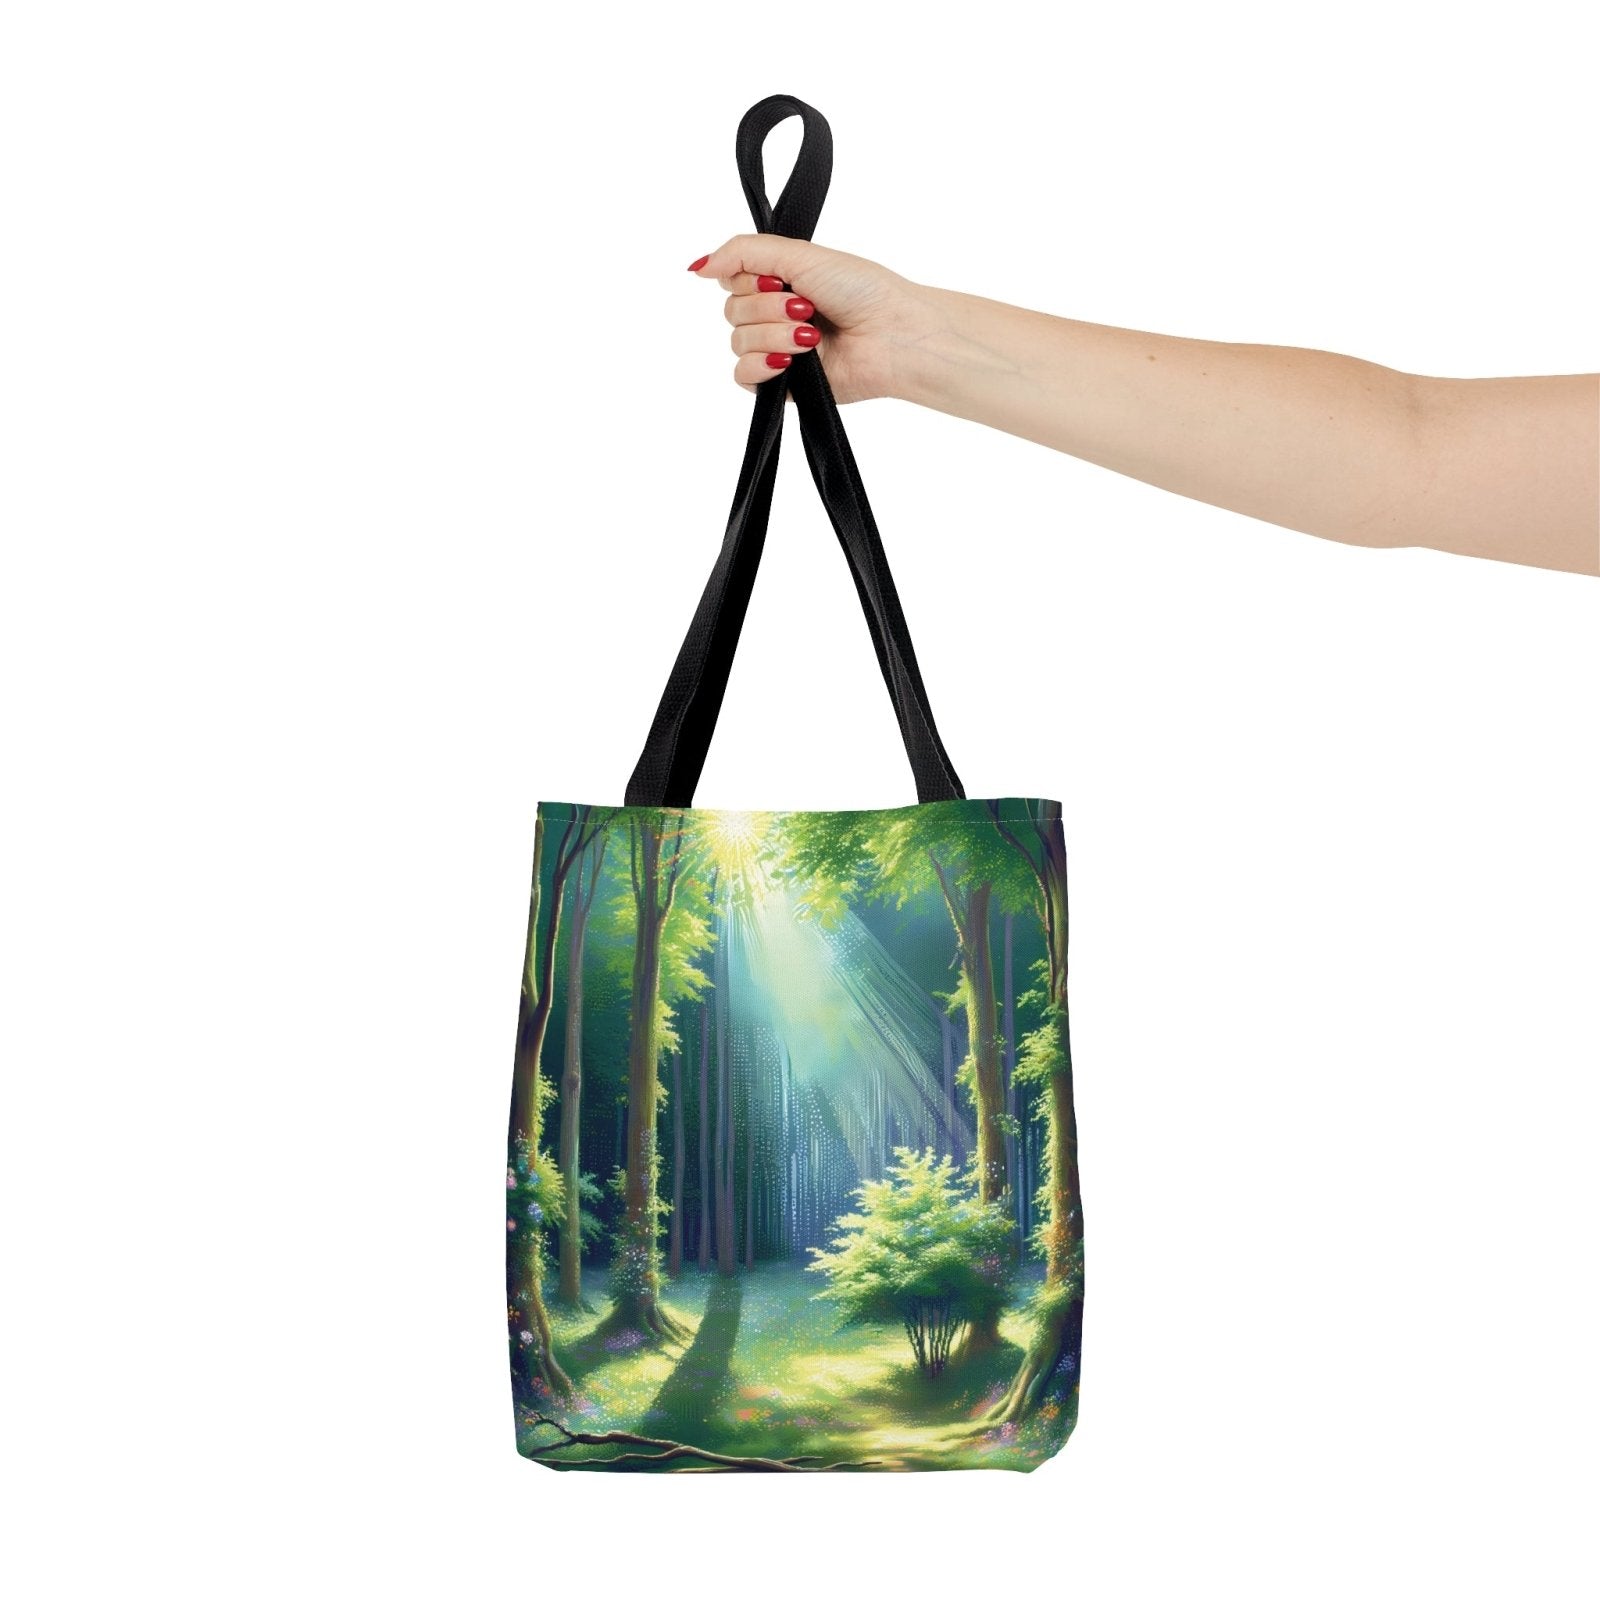 Sunlit Sanctuary Tote Bag, forest painting bag, enchanted woods tote - Subtle Blue M